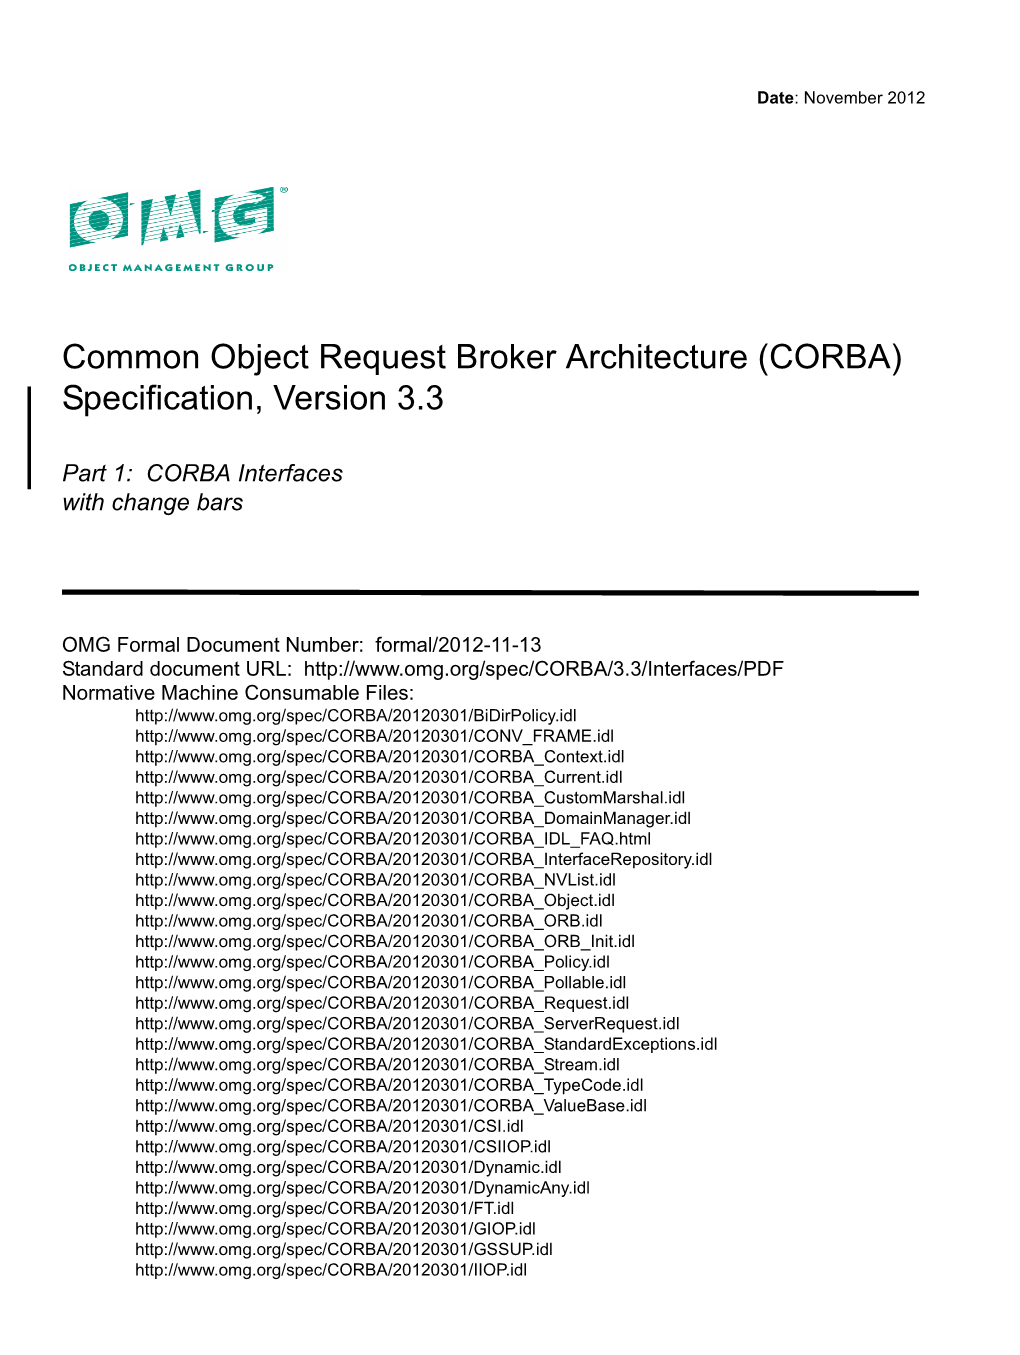 CORBA) Specification, Version 3.3